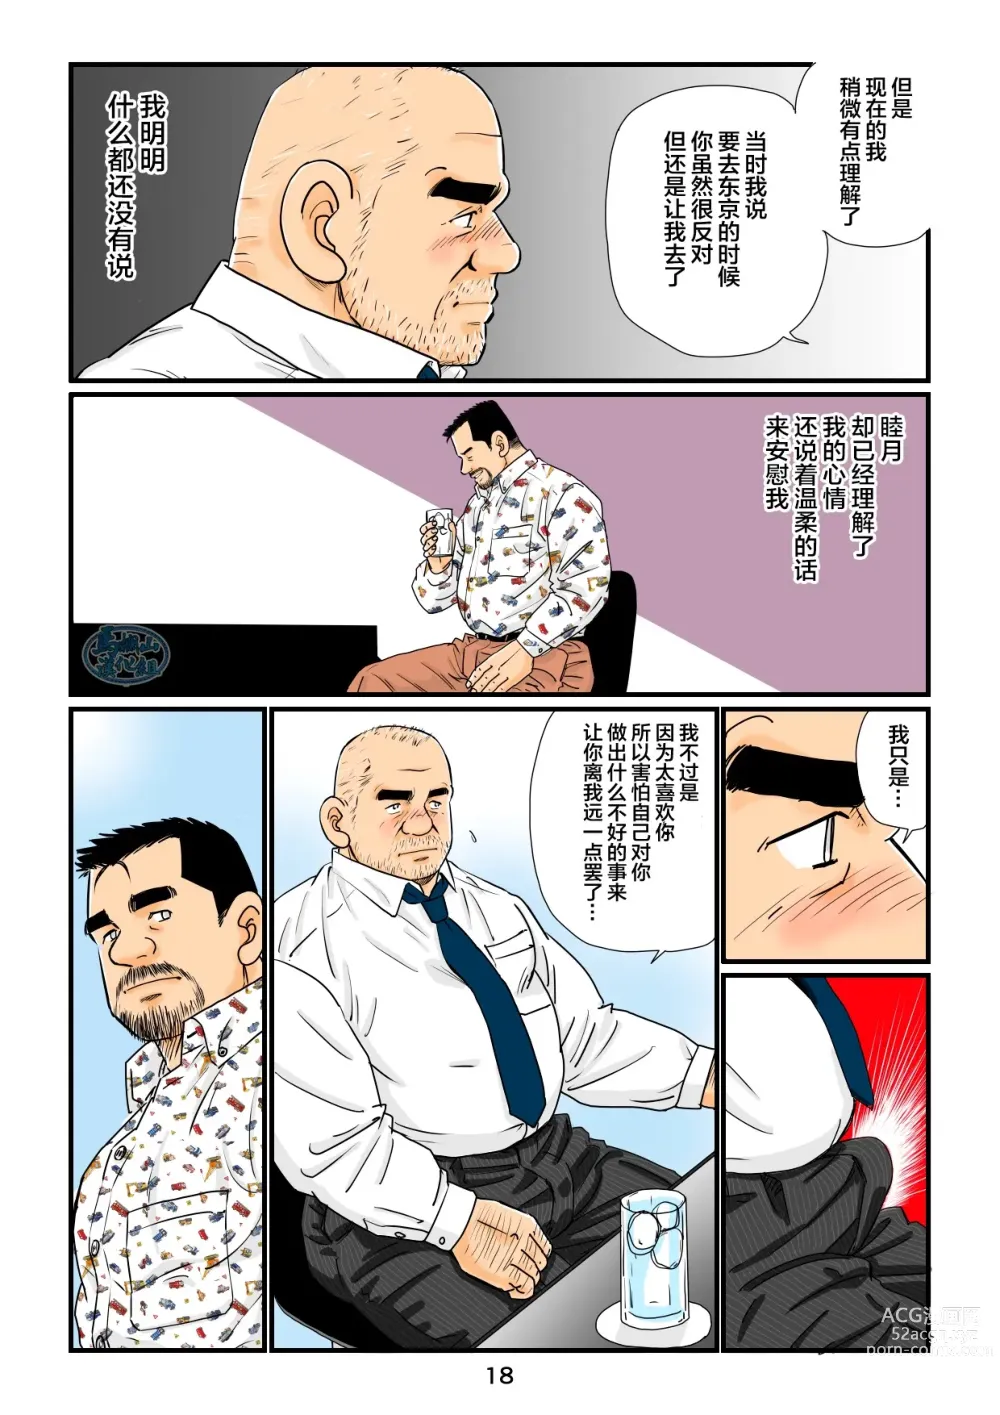 Page 18 of manga 「铁道员的浪漫」 第四回 站长和铁道员的前路